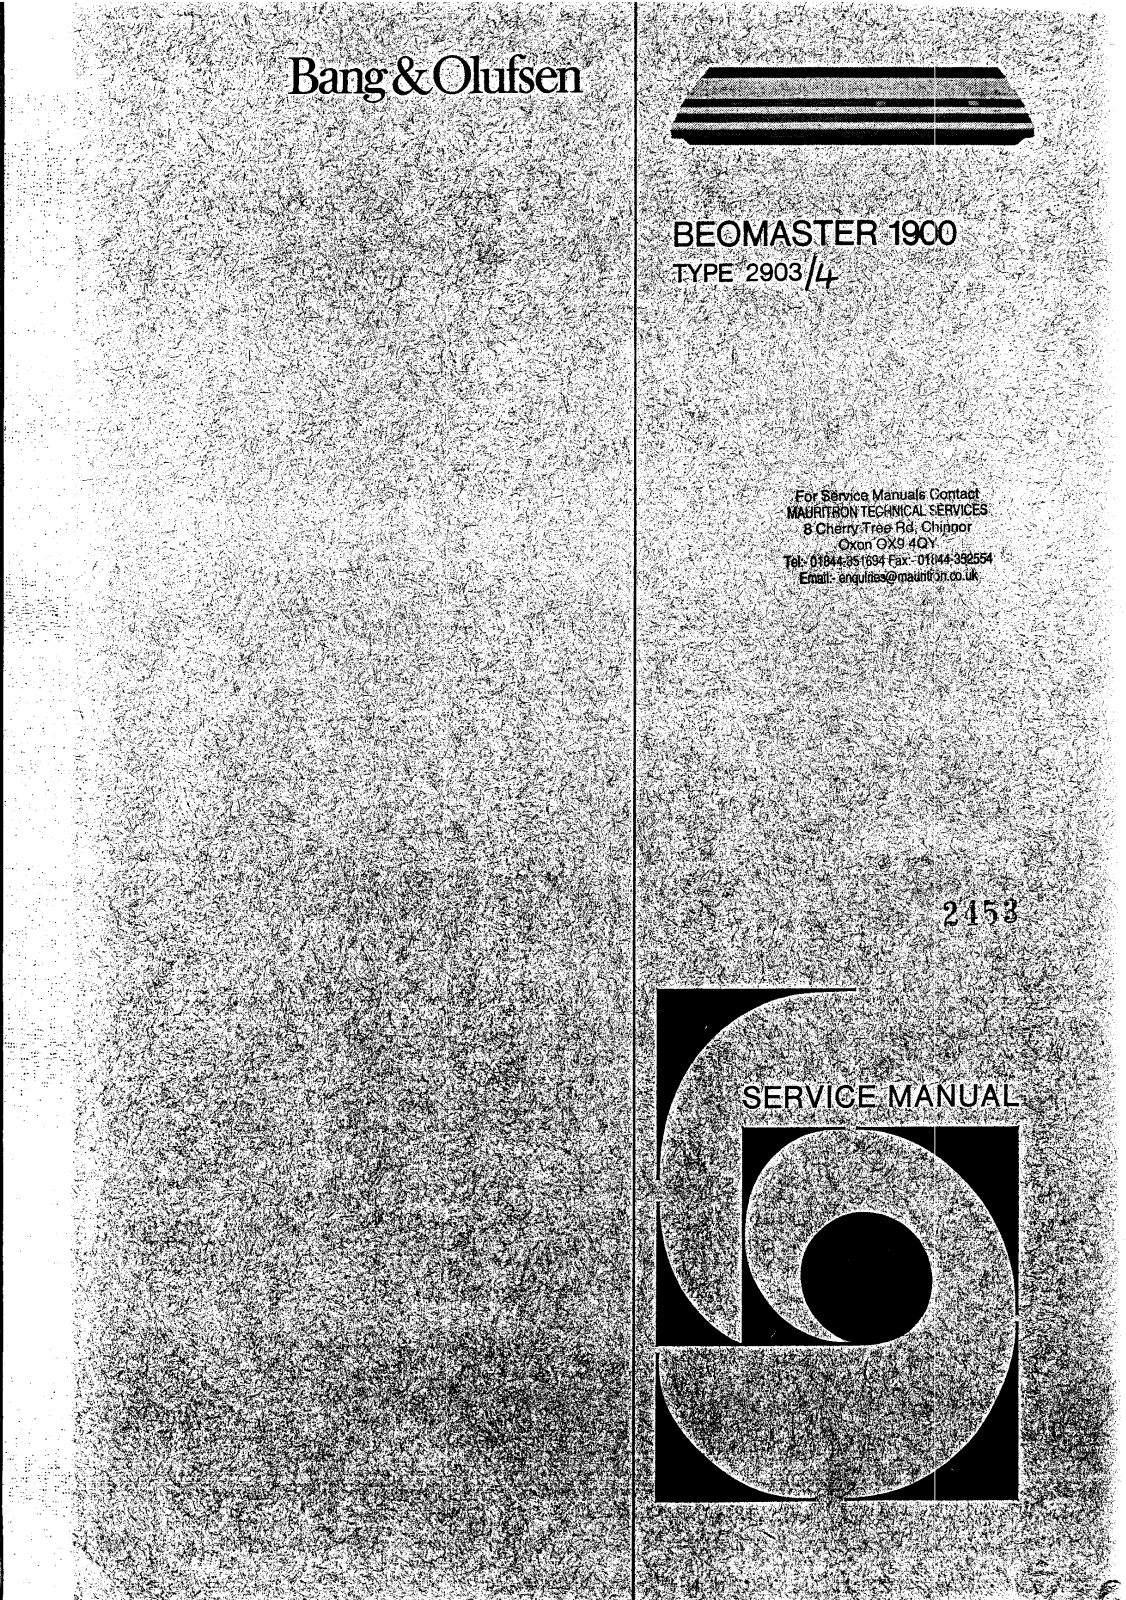 Bang and Olufsen Beomaster 1900 Service manual